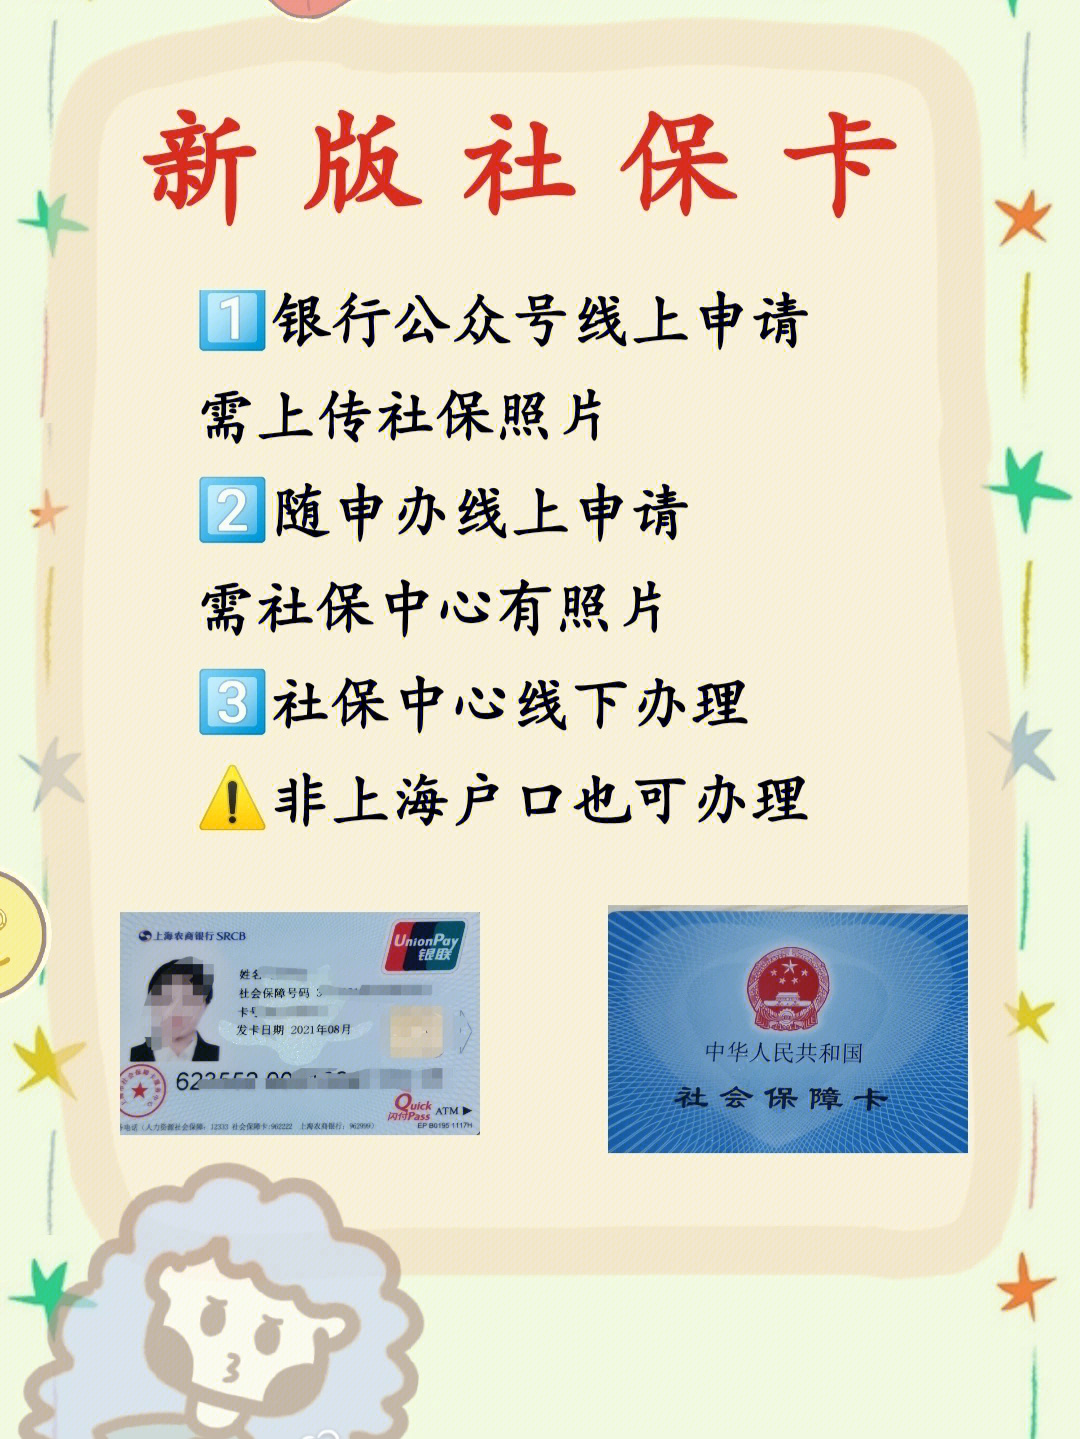 上海人社app，让你的生活更便捷